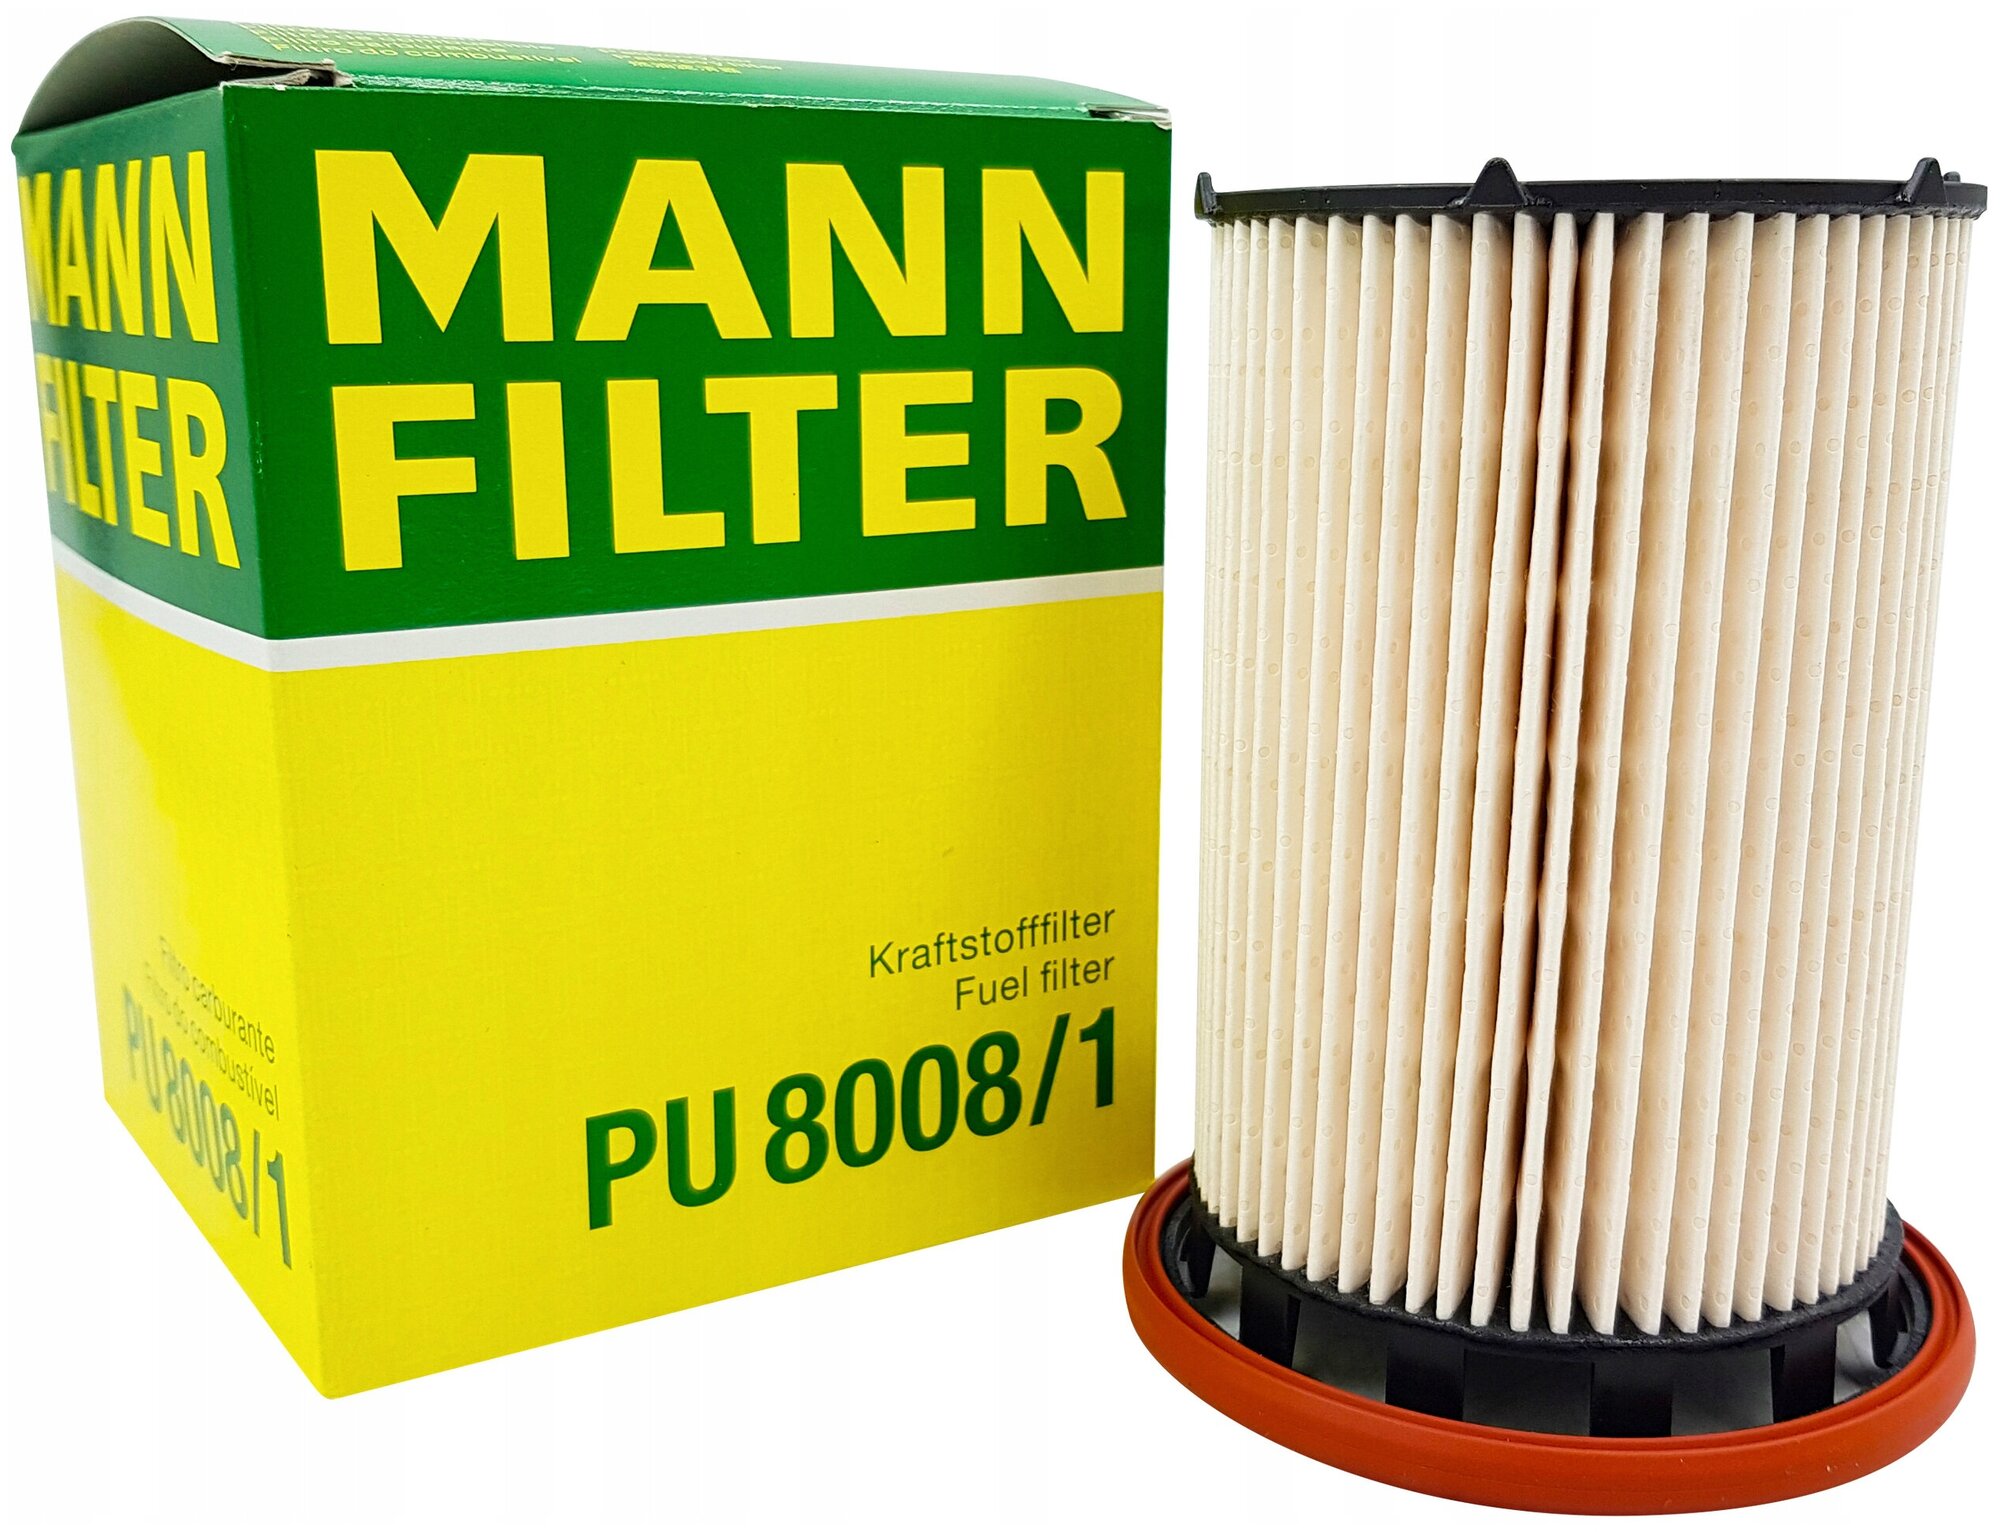 Фильтр Топливный MANN-FILTER арт. PU8008/1